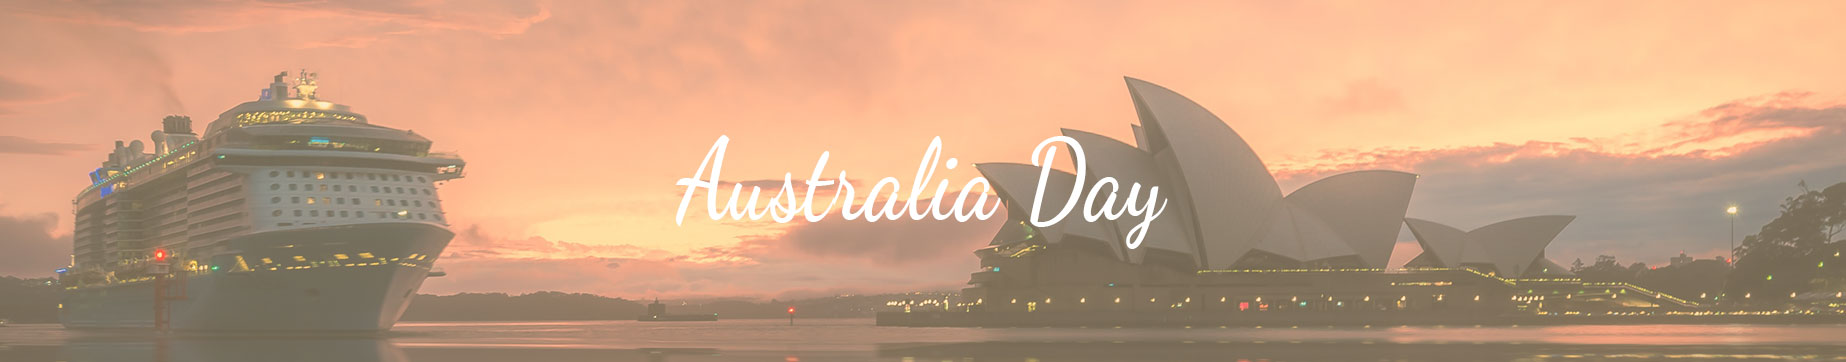 Celebrations Australia Day Under $20